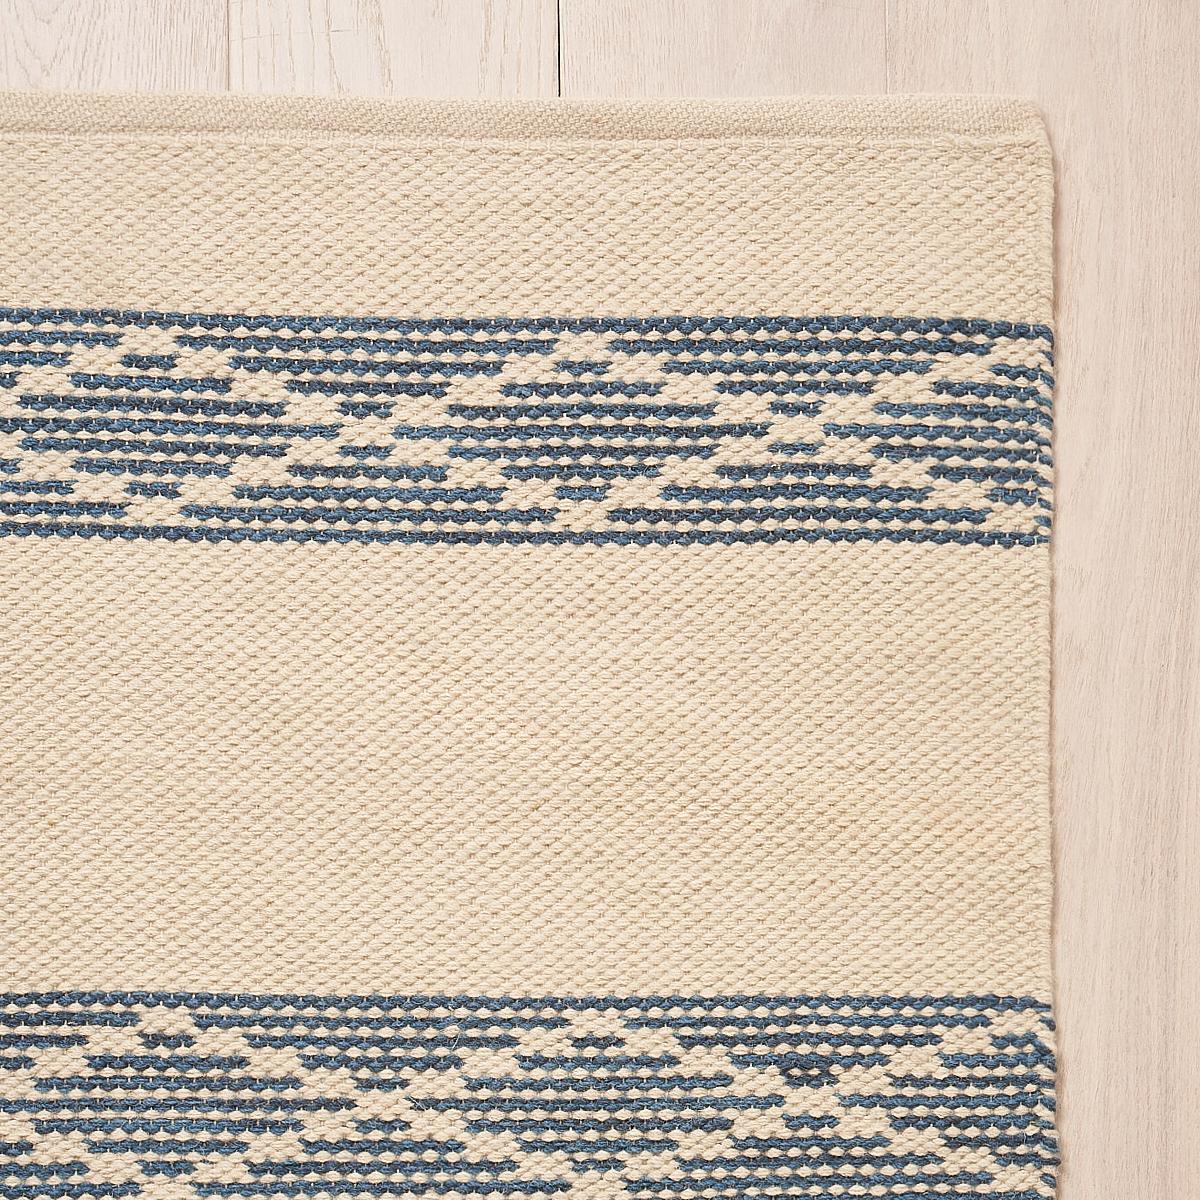 Ce tapis sera expédié en décembre. Un tissage serré et stable de laine et de coton, Sequoia Stripe est un motif géométrique polyvalent avec un détail unique de treillis. Inspiré de nos populaires tissus et papiers peints Sequoia Stripe, il présente